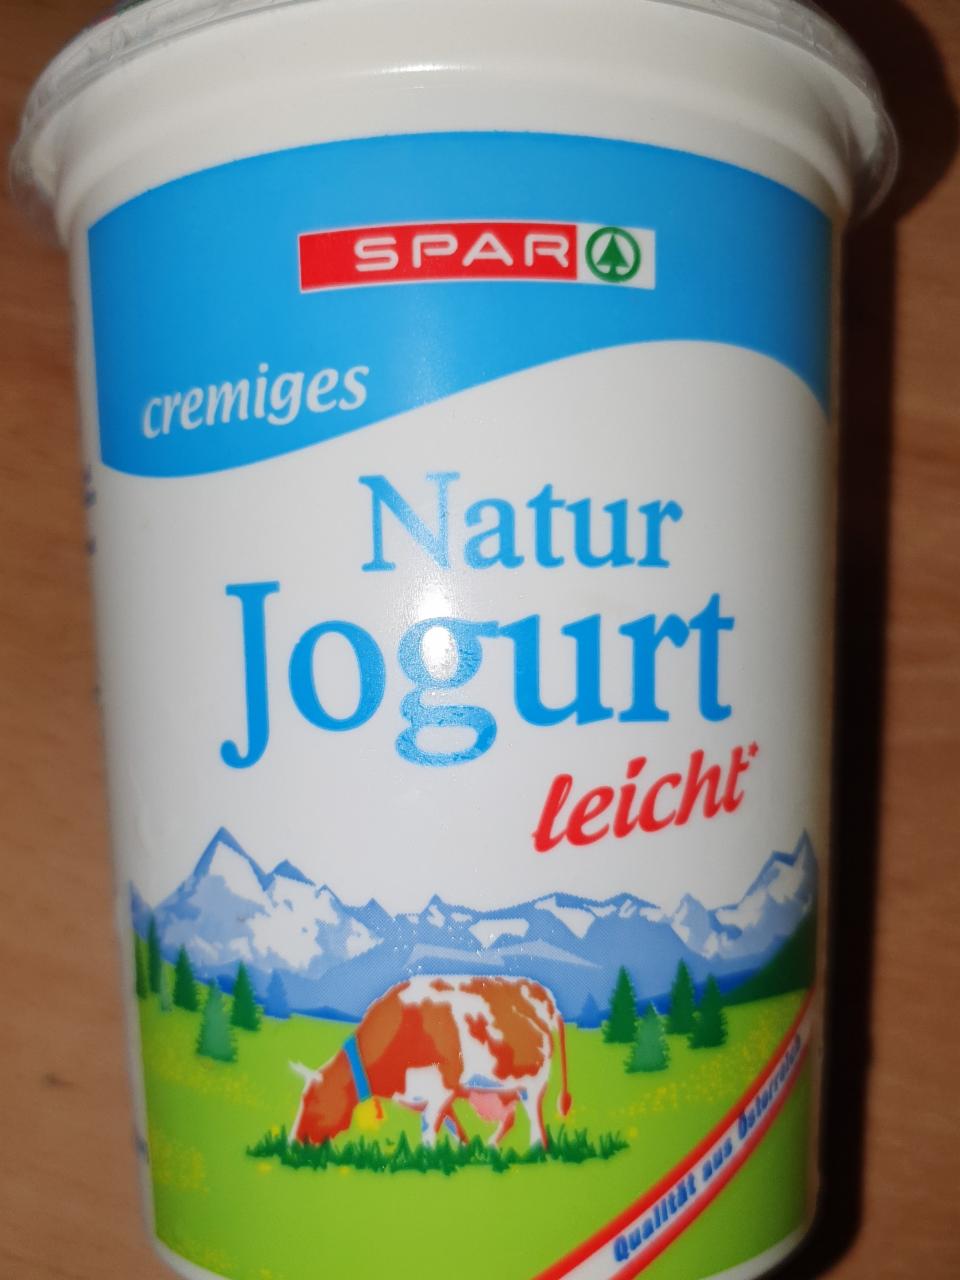 Fotografie - Cremiges Natur Jogurt leicht Spar